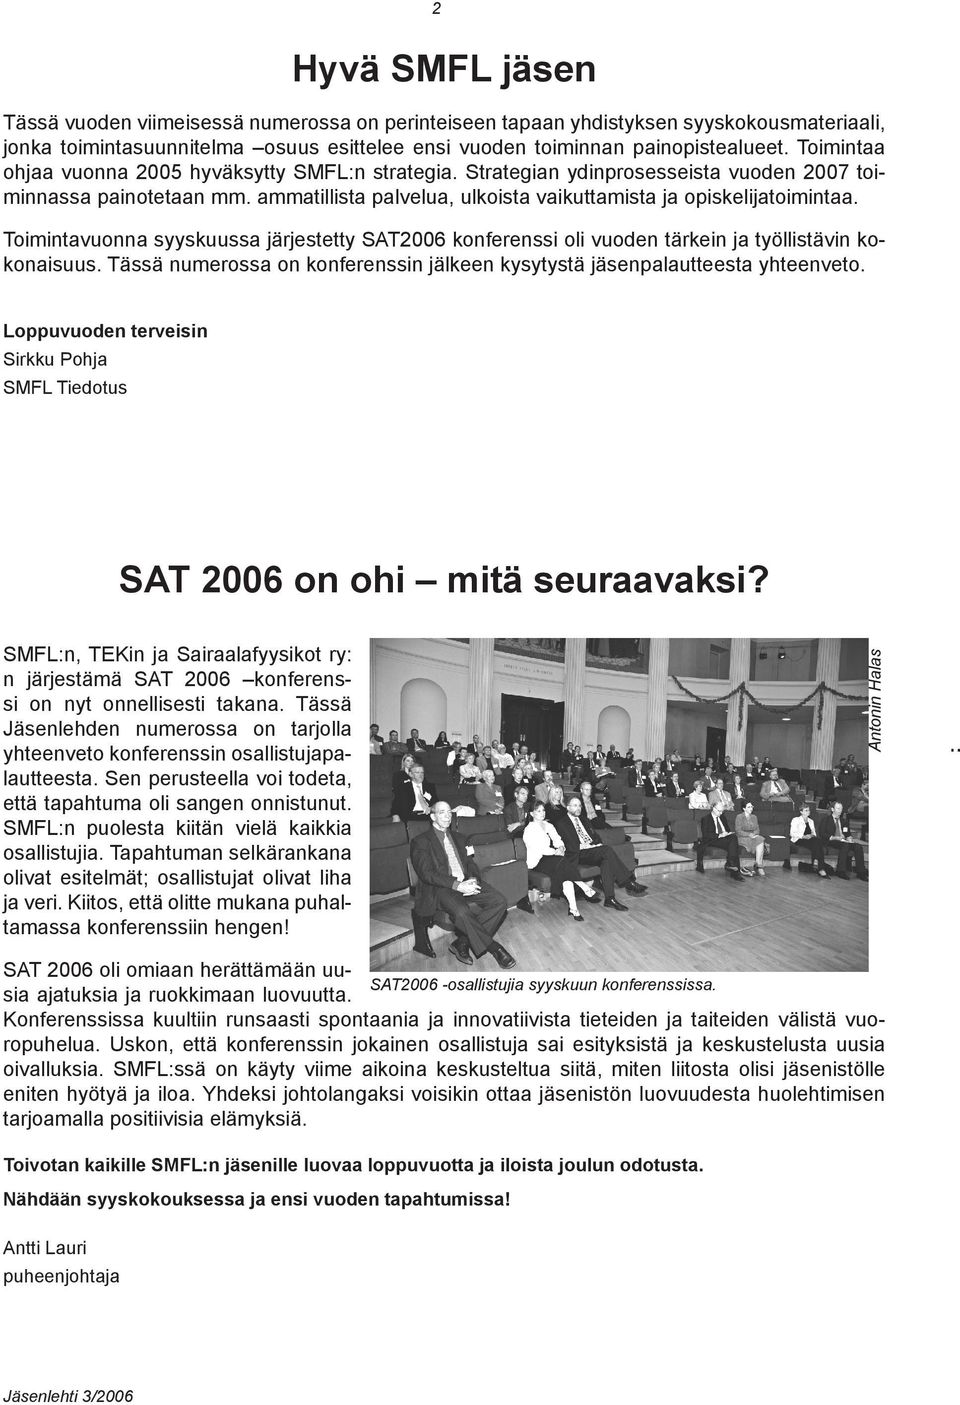 Toimintavuonna syyskuussa järjestetty SAT2006 konferenssi oli vuoden tärkein ja työllistävin kokonaisuus. Tässä numerossa on konferenssin jälkeen kysytystä jäsenpalautteesta yhteenveto.